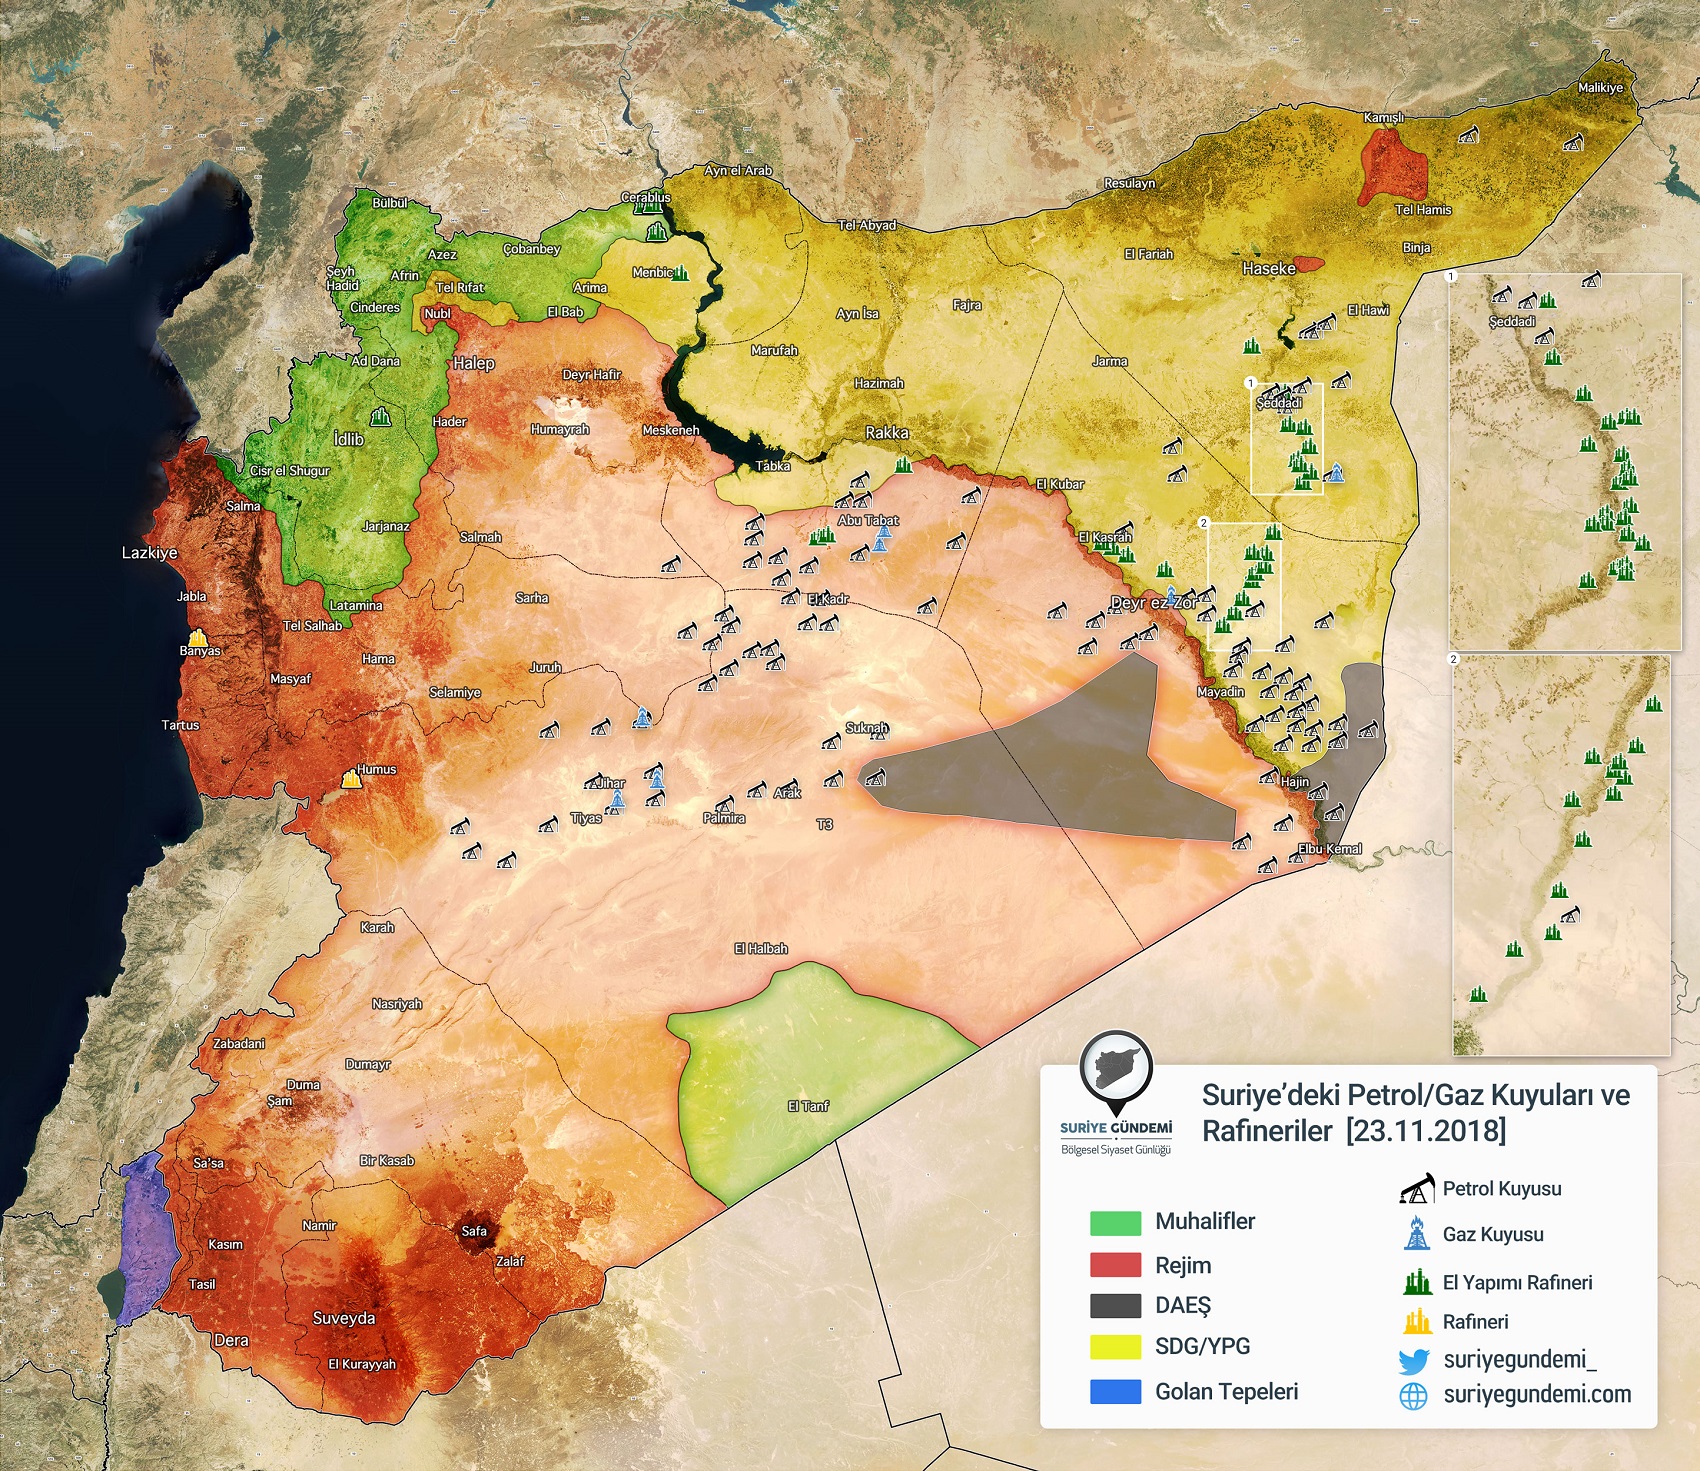 حروب المصادر الطبيعية في سوريا